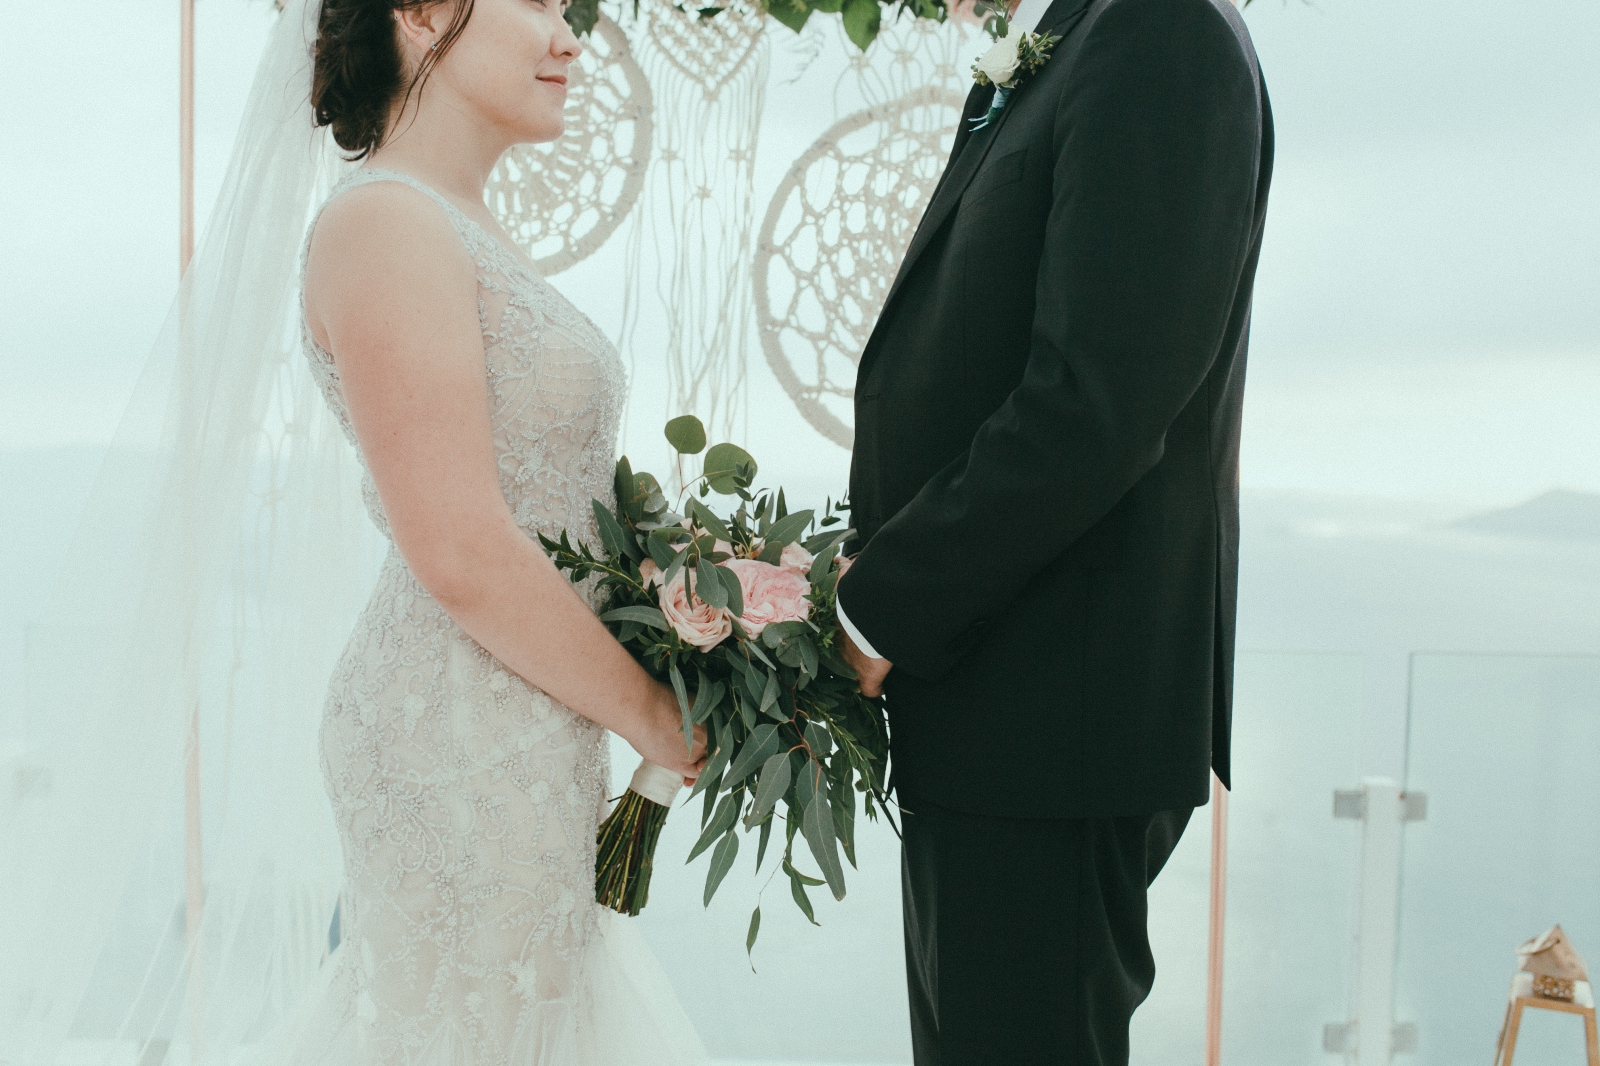 santorini-wedding-photographer50.jpg